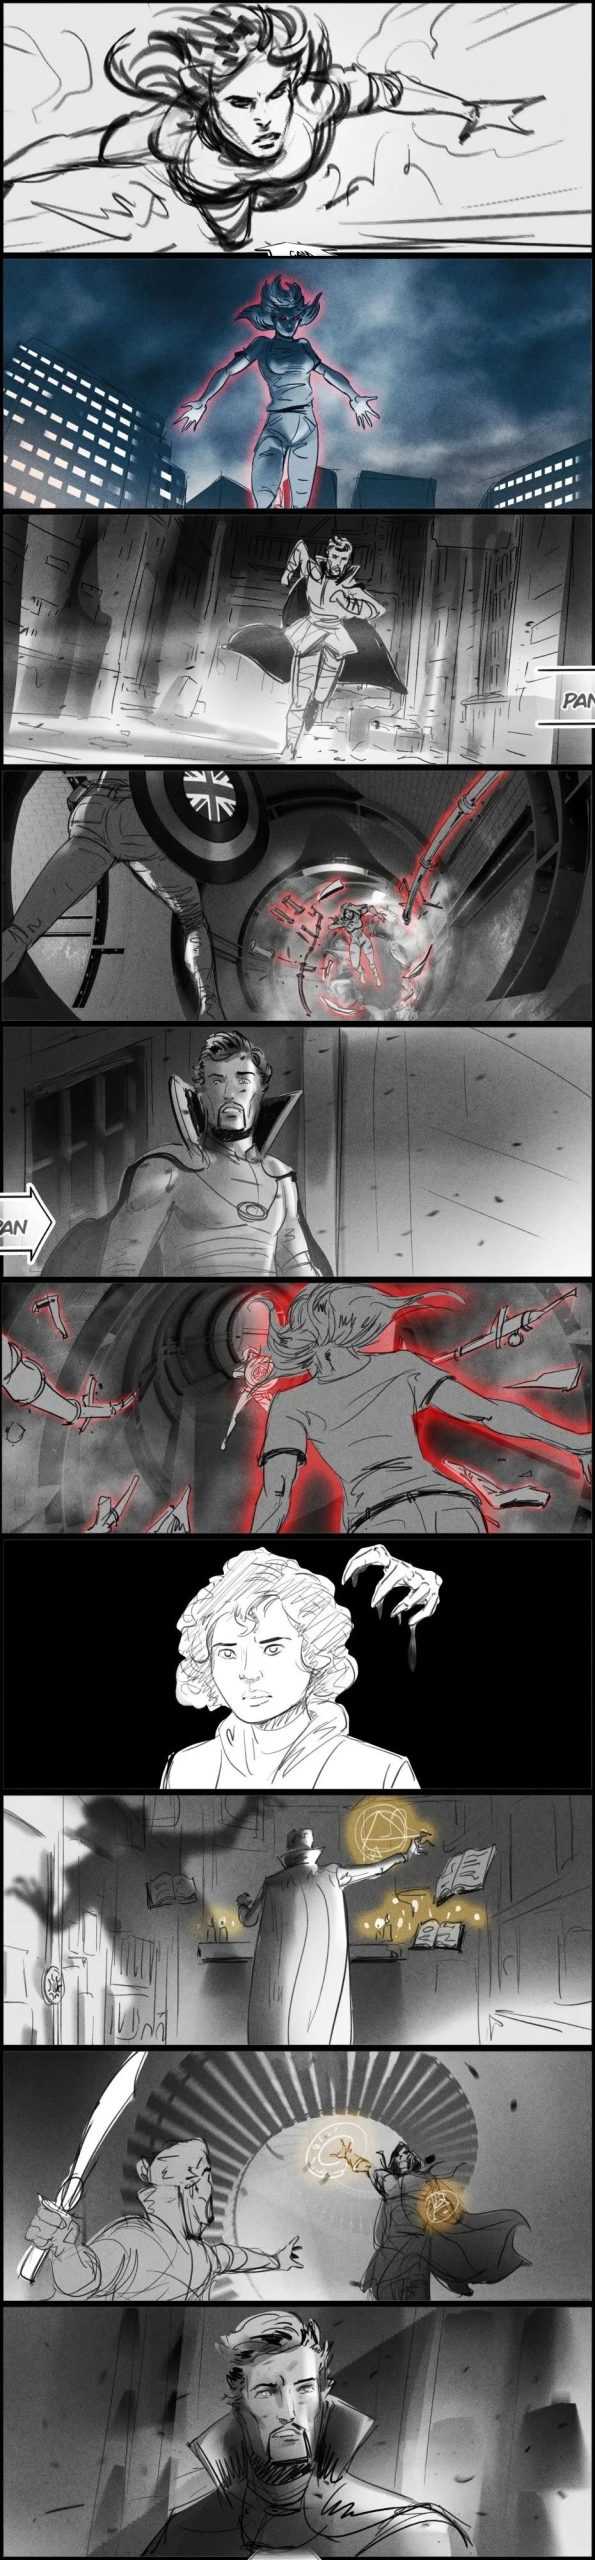 漫威电影《奇异博士2》原先的故事设定，原本有钢铁侠的-插图8